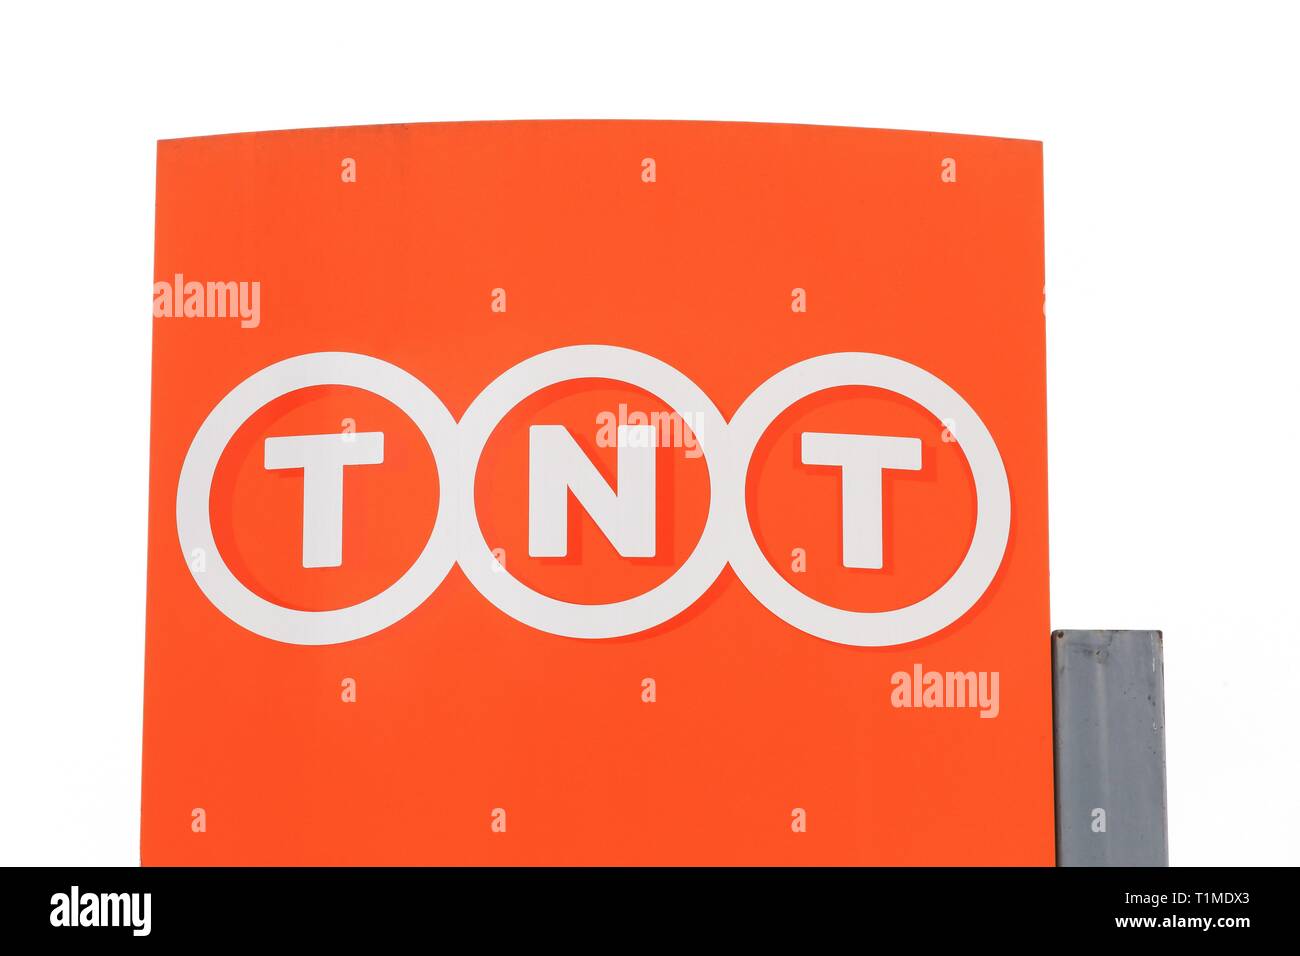 Lyon, Francia - 20 de enero de 2019: TNT logo en un panel. TNT Express es una organización internacional, la entrega de correo y servicios logísticos Empresa Foto de stock